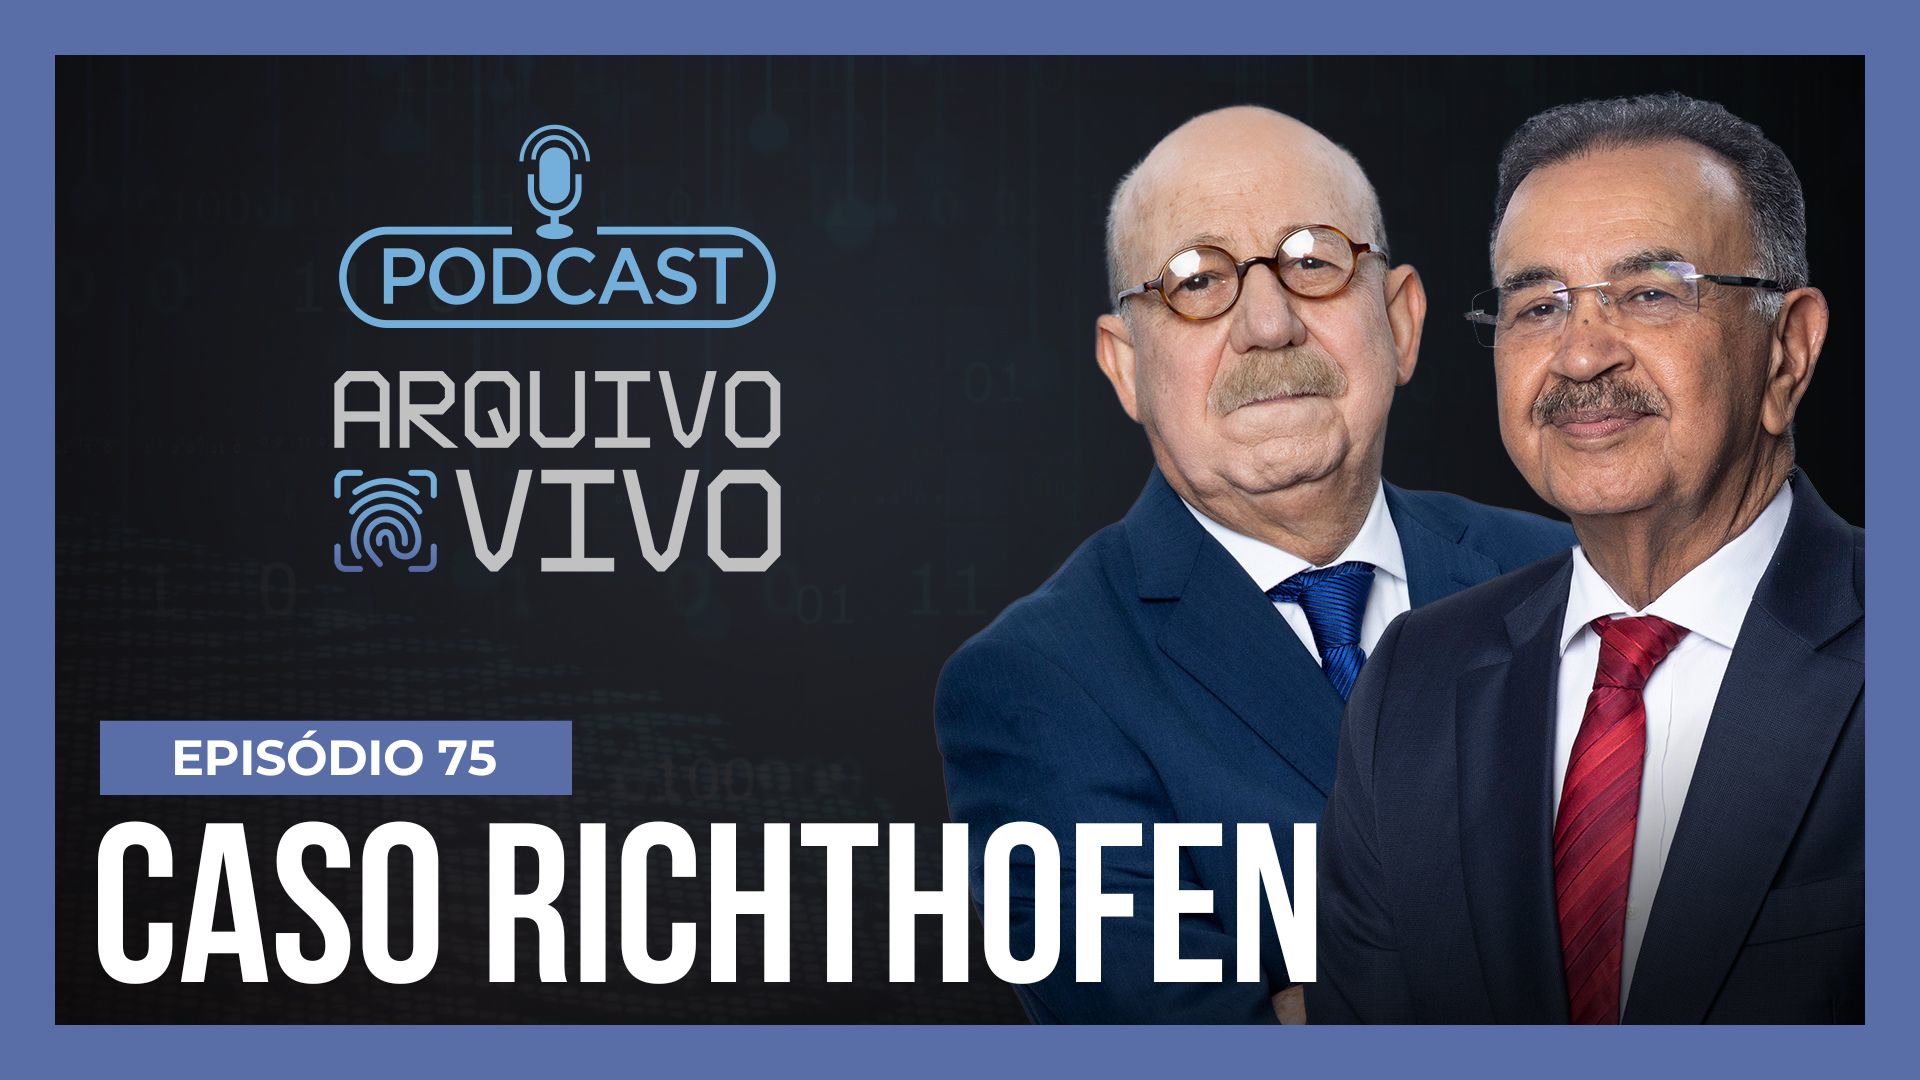 Vídeo: Podcast Arquivo Vivo : Suzane em liberdade e os novos contornos do Caso Richthofen | Ep. 75